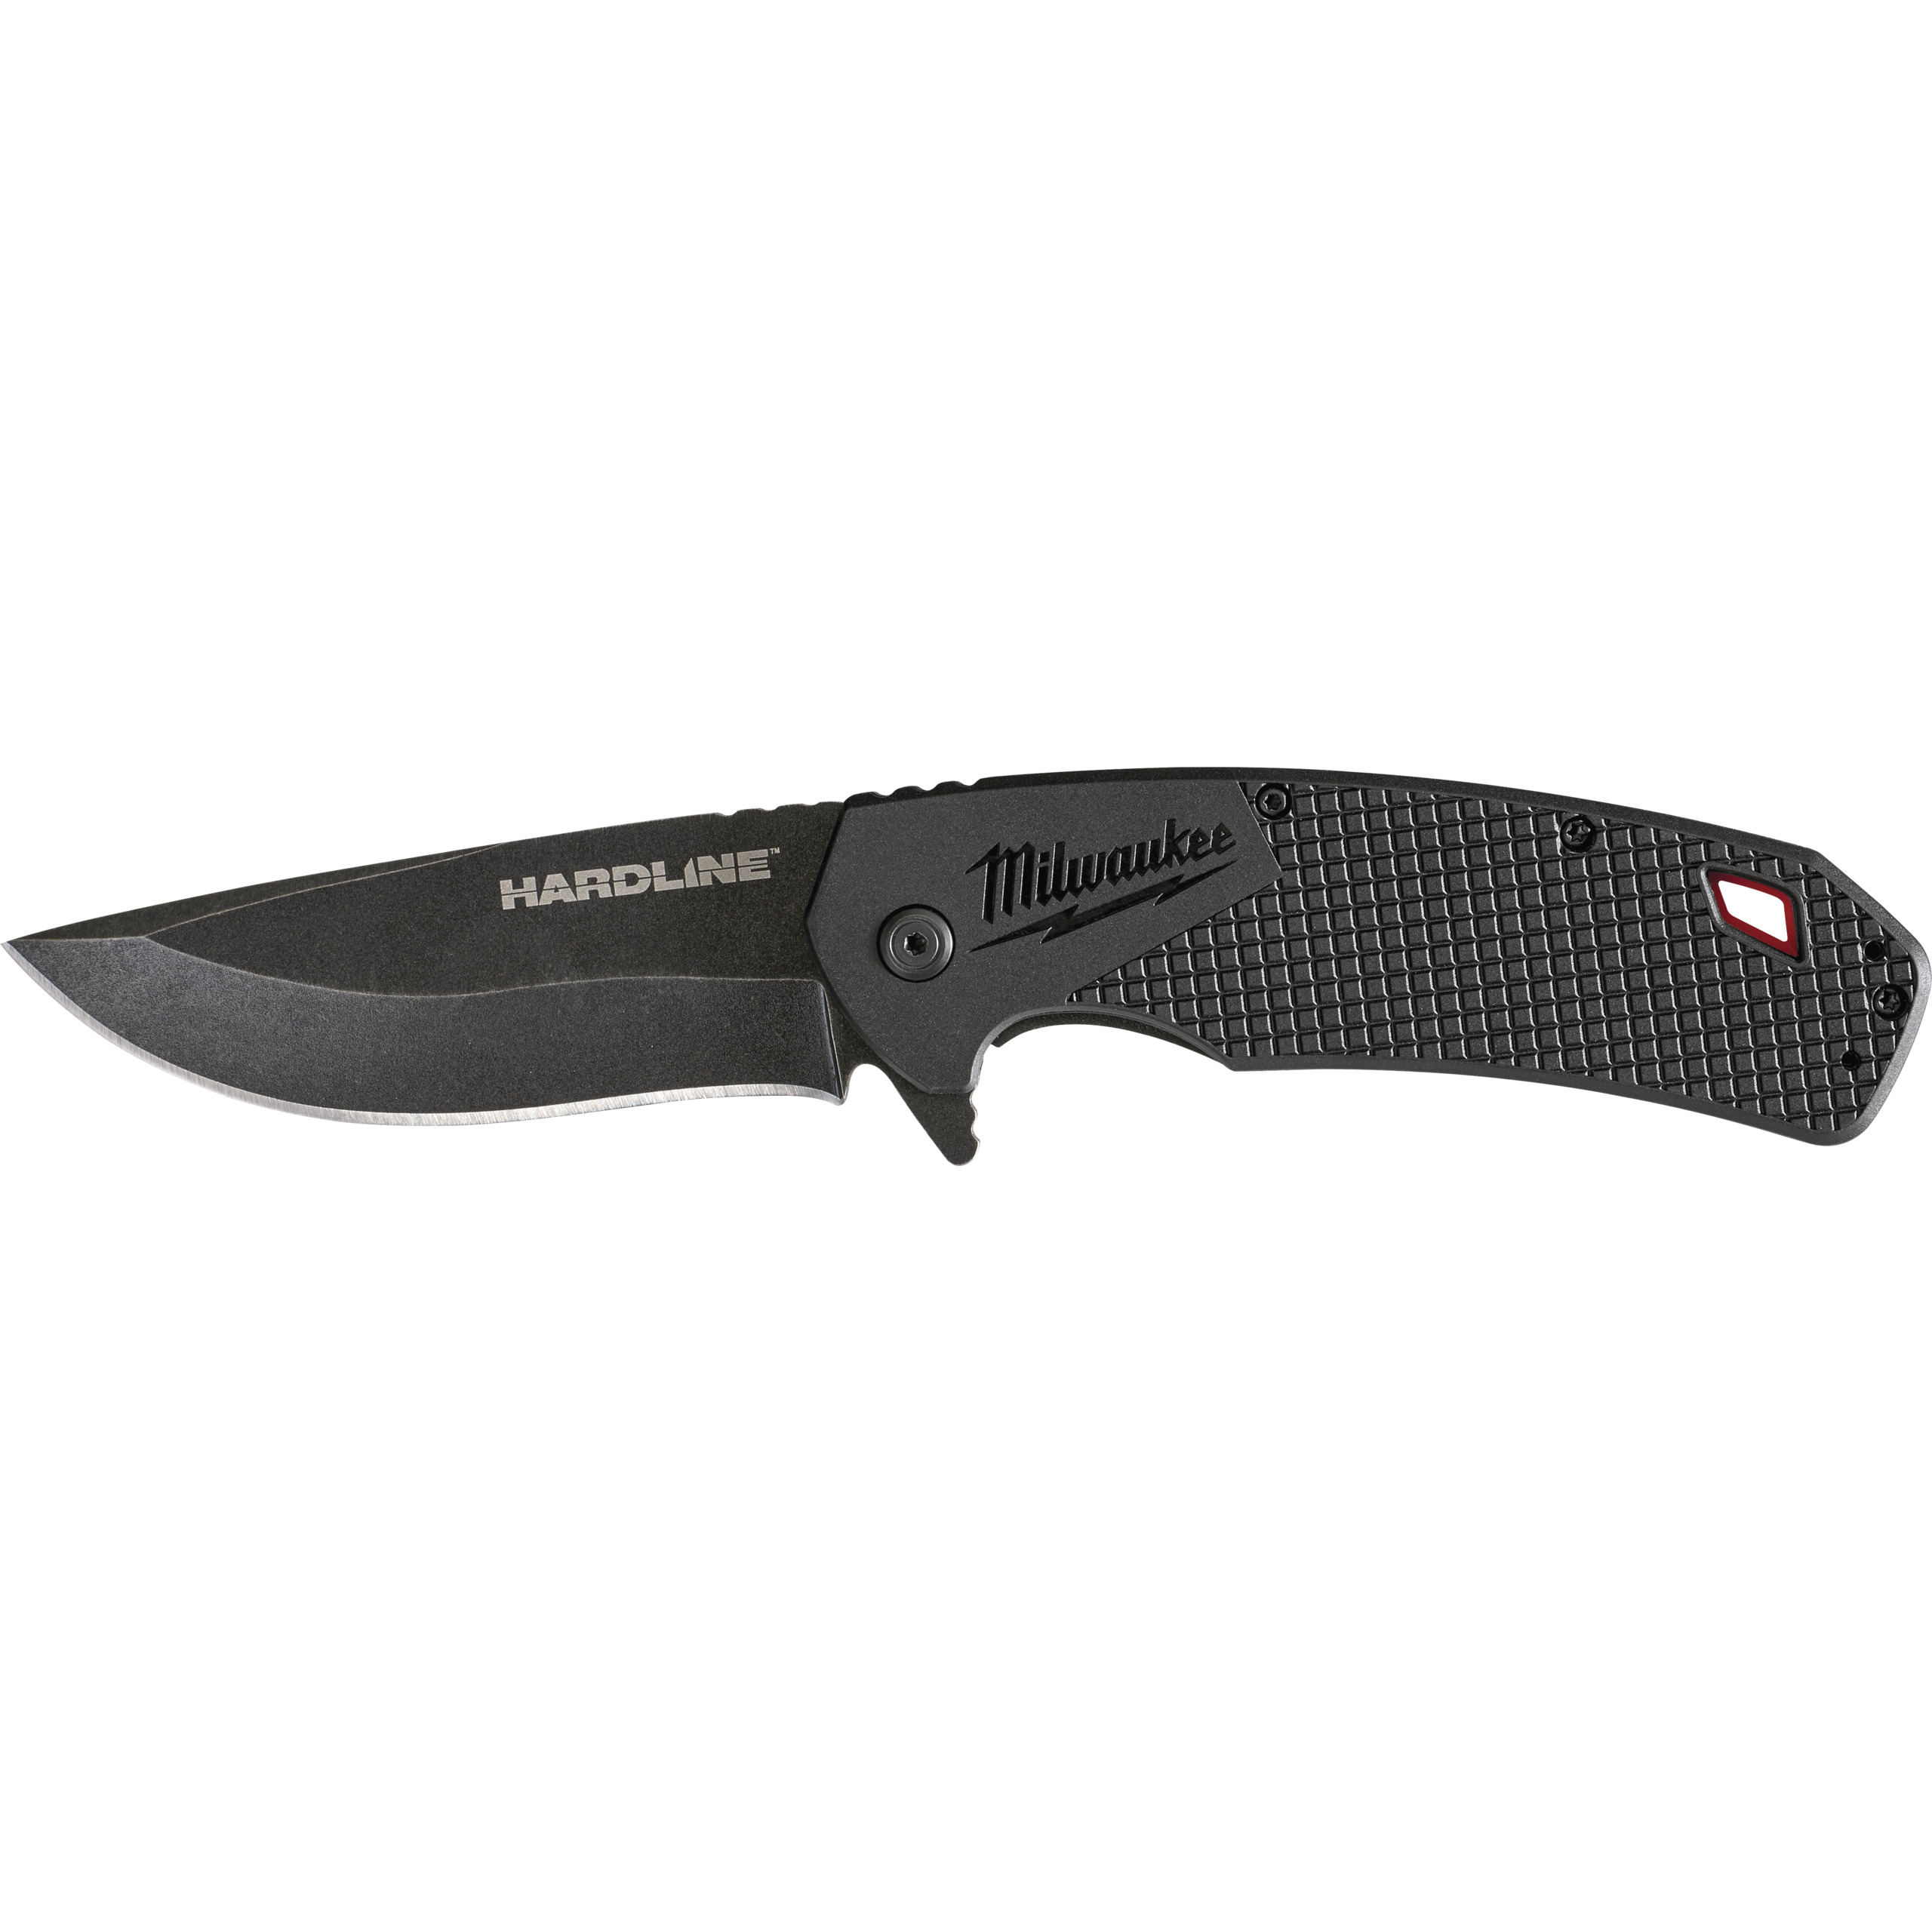 Milwaukee Hardline Folding Knife Smooth 89 mm - 1 pc 4932492453